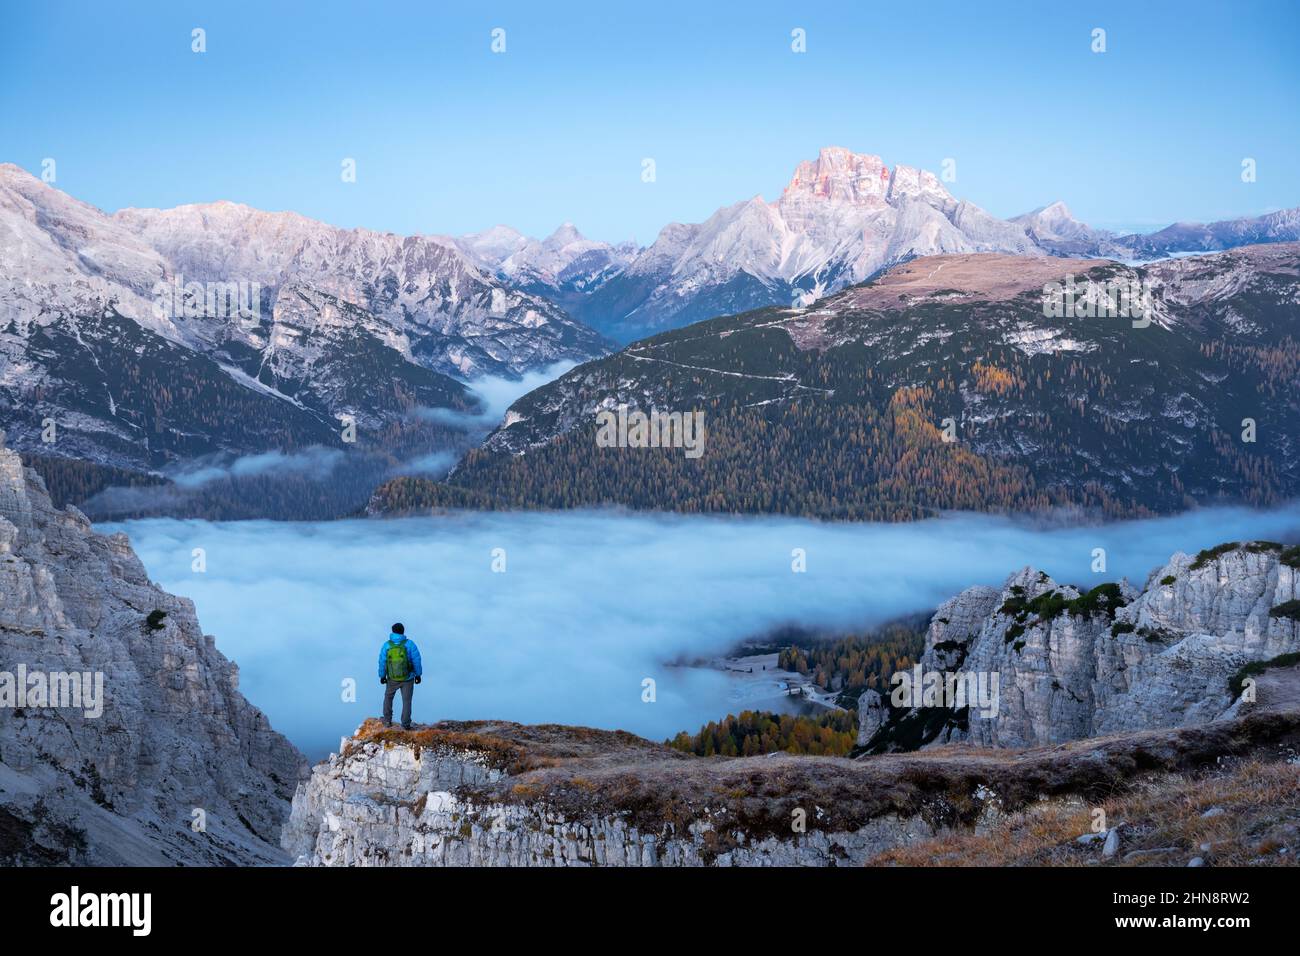 Un touriste se dresse au-dessus du brouillard au bord d'une falaise dans les Dolomites.Emplacement Auronzo rifugio dans le parc national de Tre Cime di Lavaredo, Dolomites, Trentin-Haut-Adige, Italie Banque D'Images